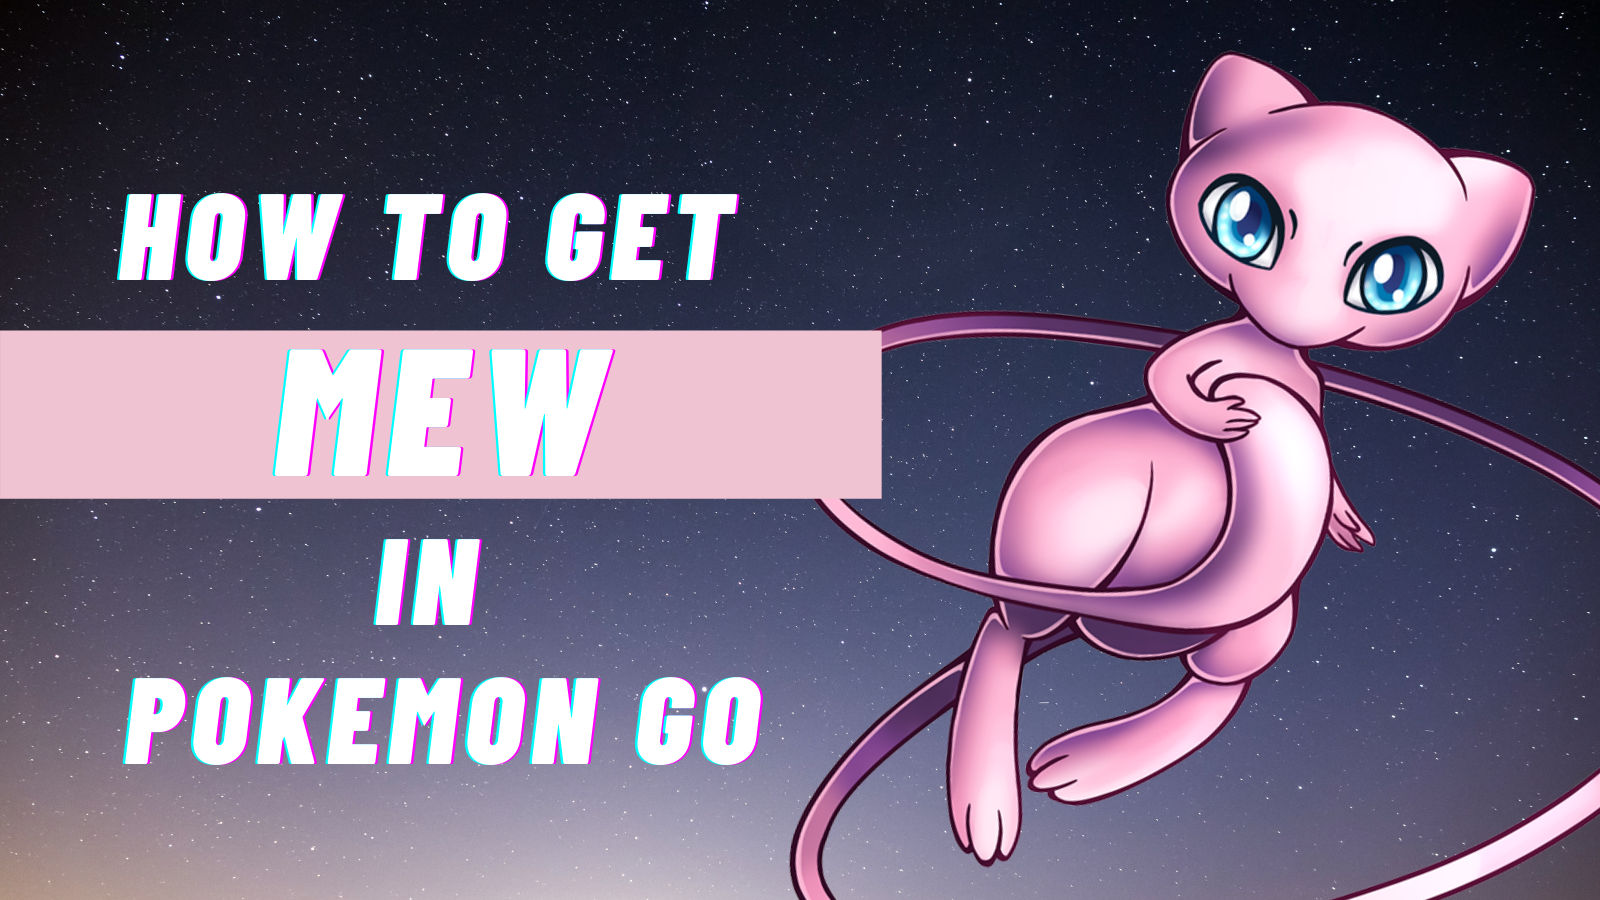 HOW TO GET A FREE MEW (Pokémon GO / Pokémon Let's GO) 